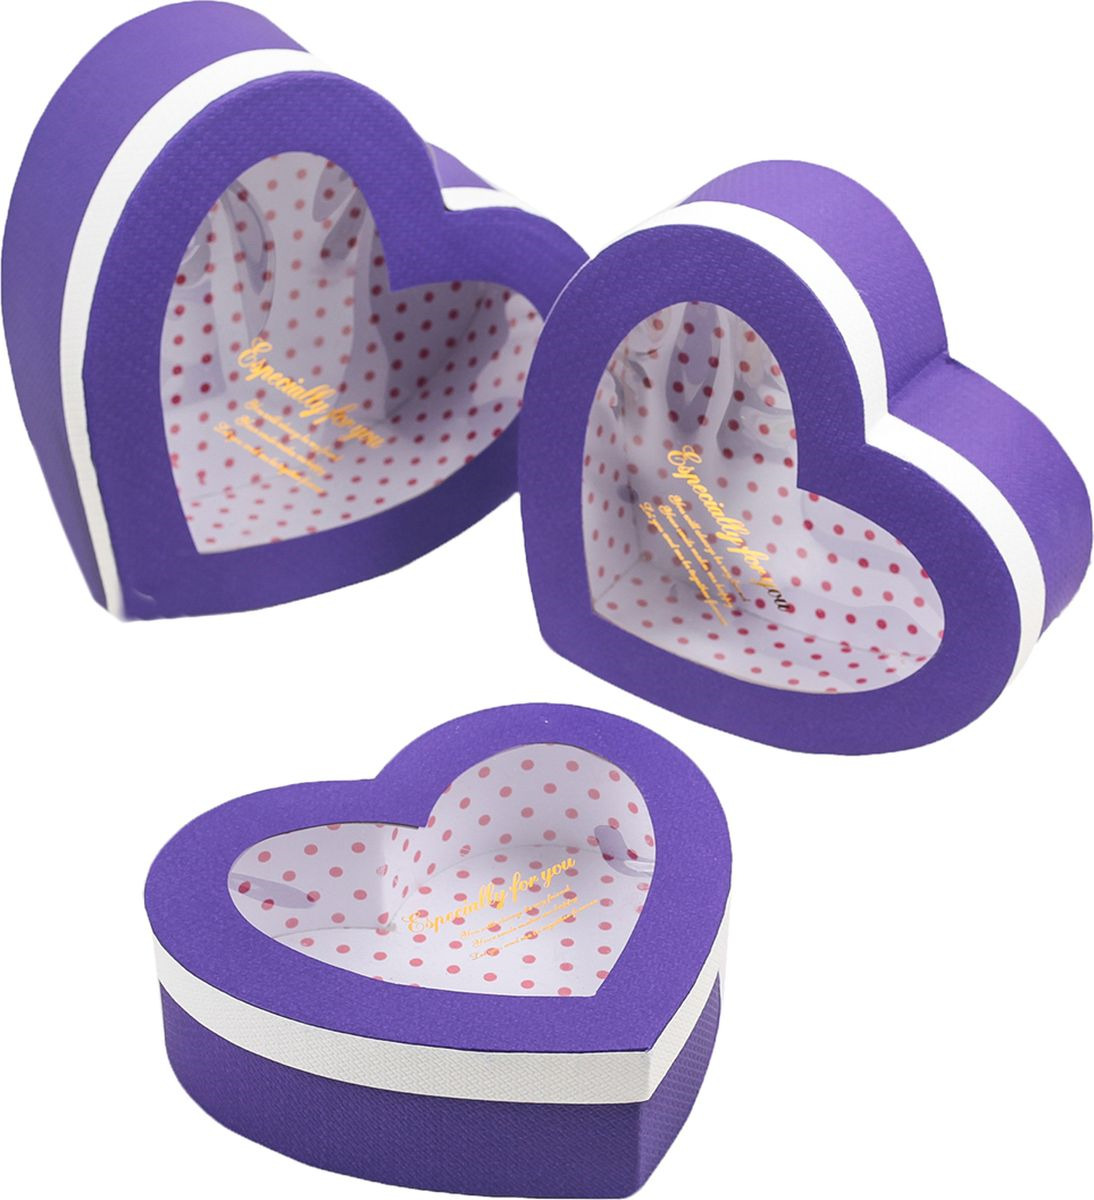 фото Подарочная упаковка "Сердце", фиолетовый, 3 шт Иу жусима крафтс кампани лимитед